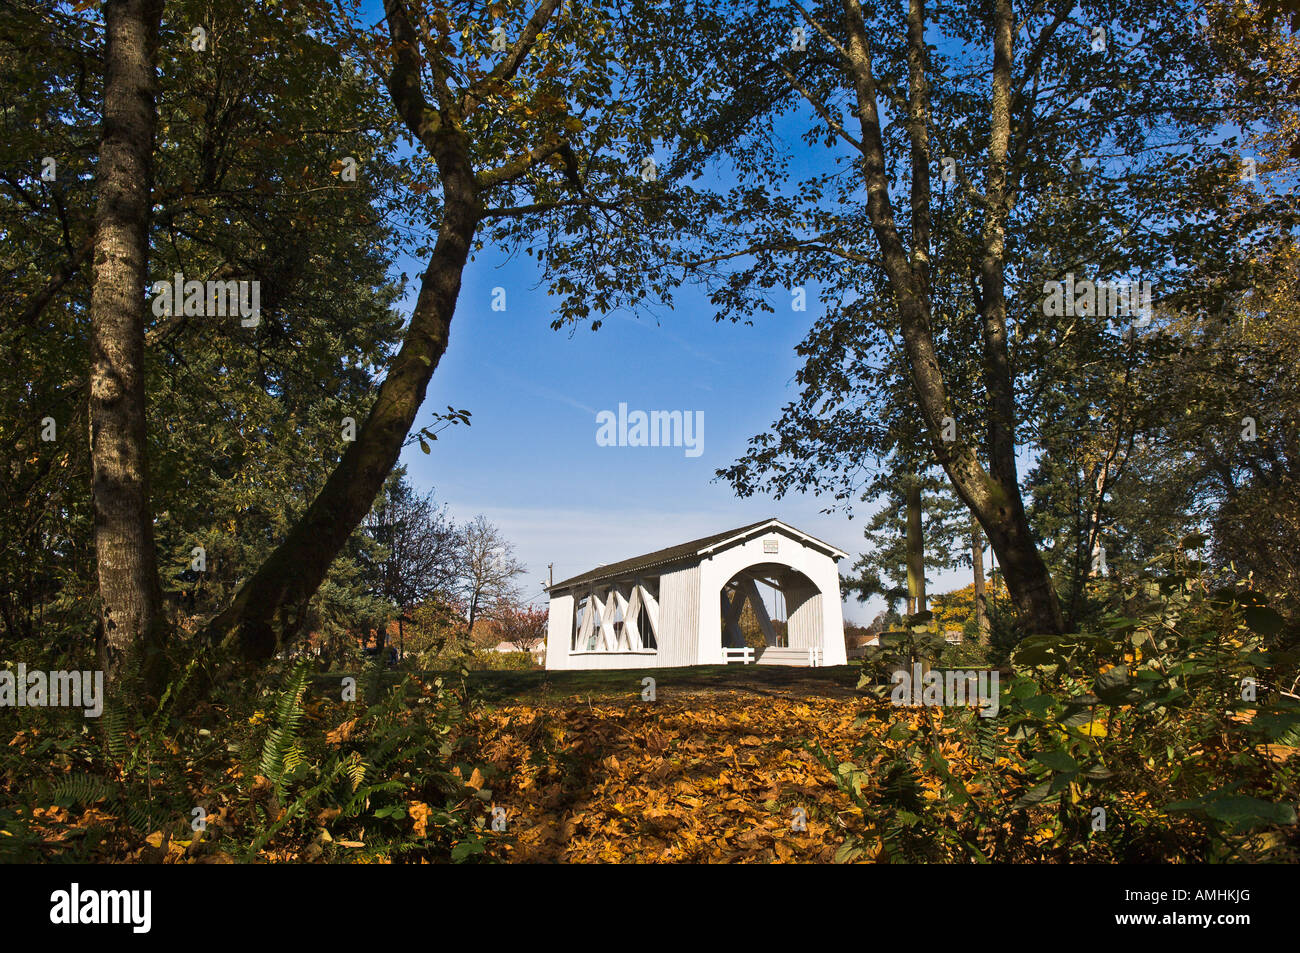 La Jordanie pont couvert au Pioneer Park Stayton Oregon USA Banque D'Images